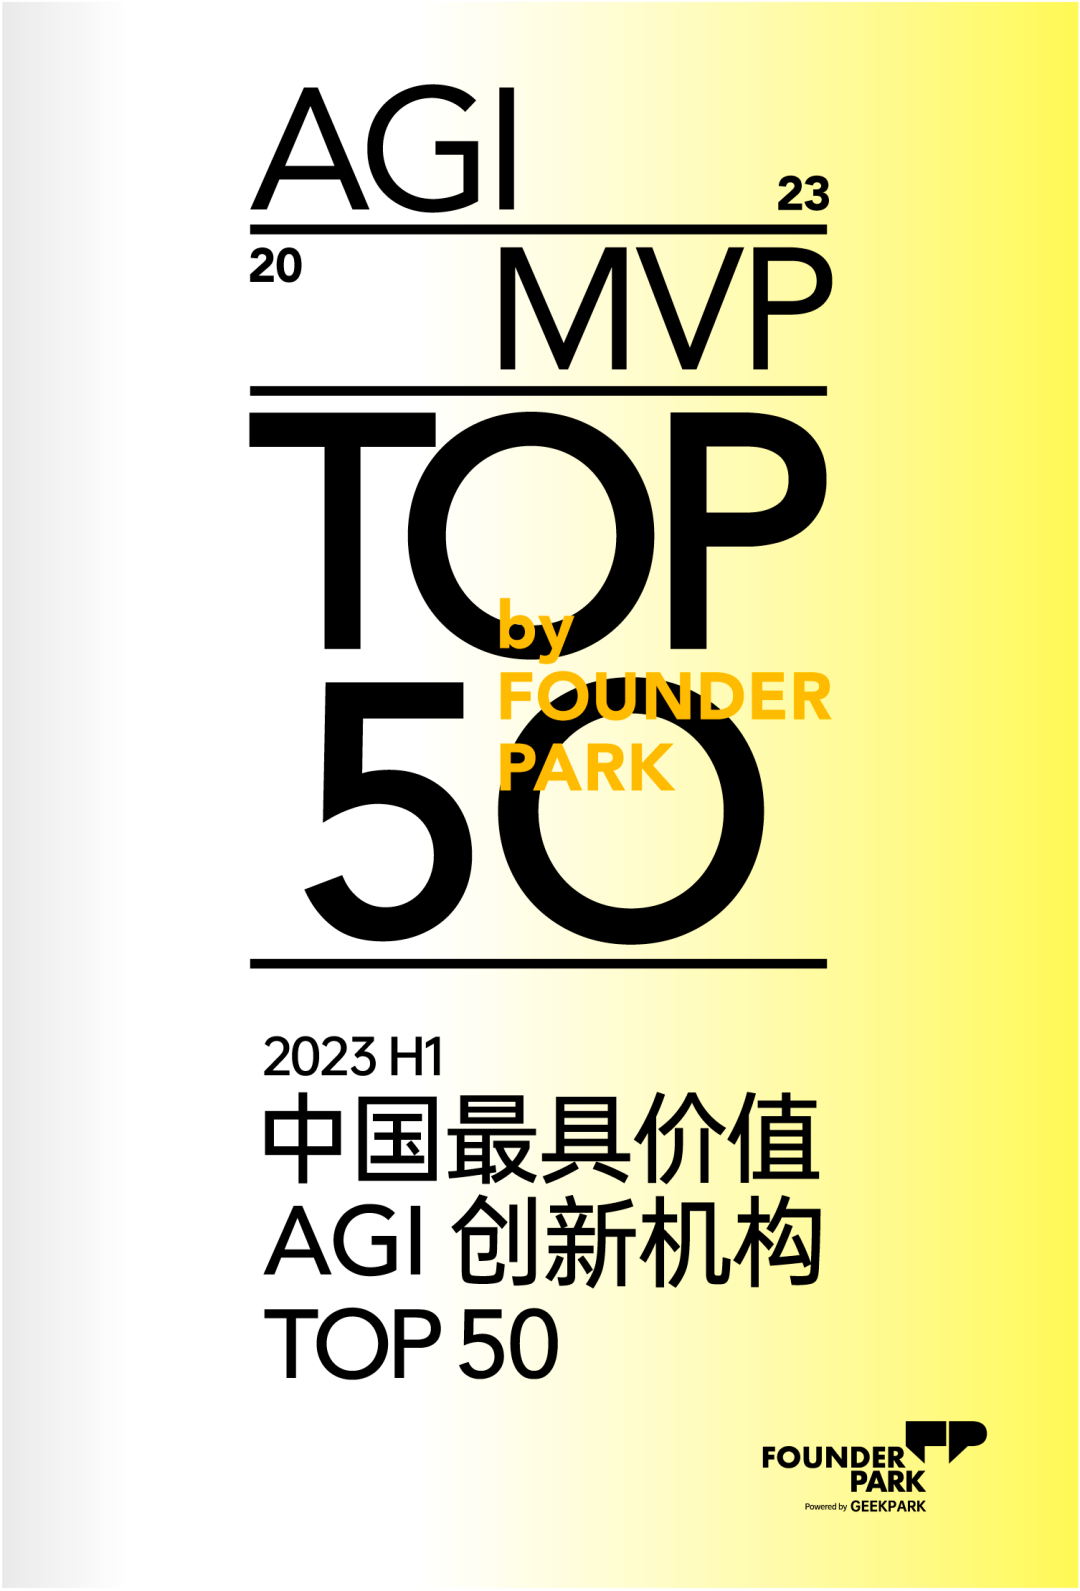 2023 H1「中国最具价值 AGI 创新机构 TOP 50」正式发布